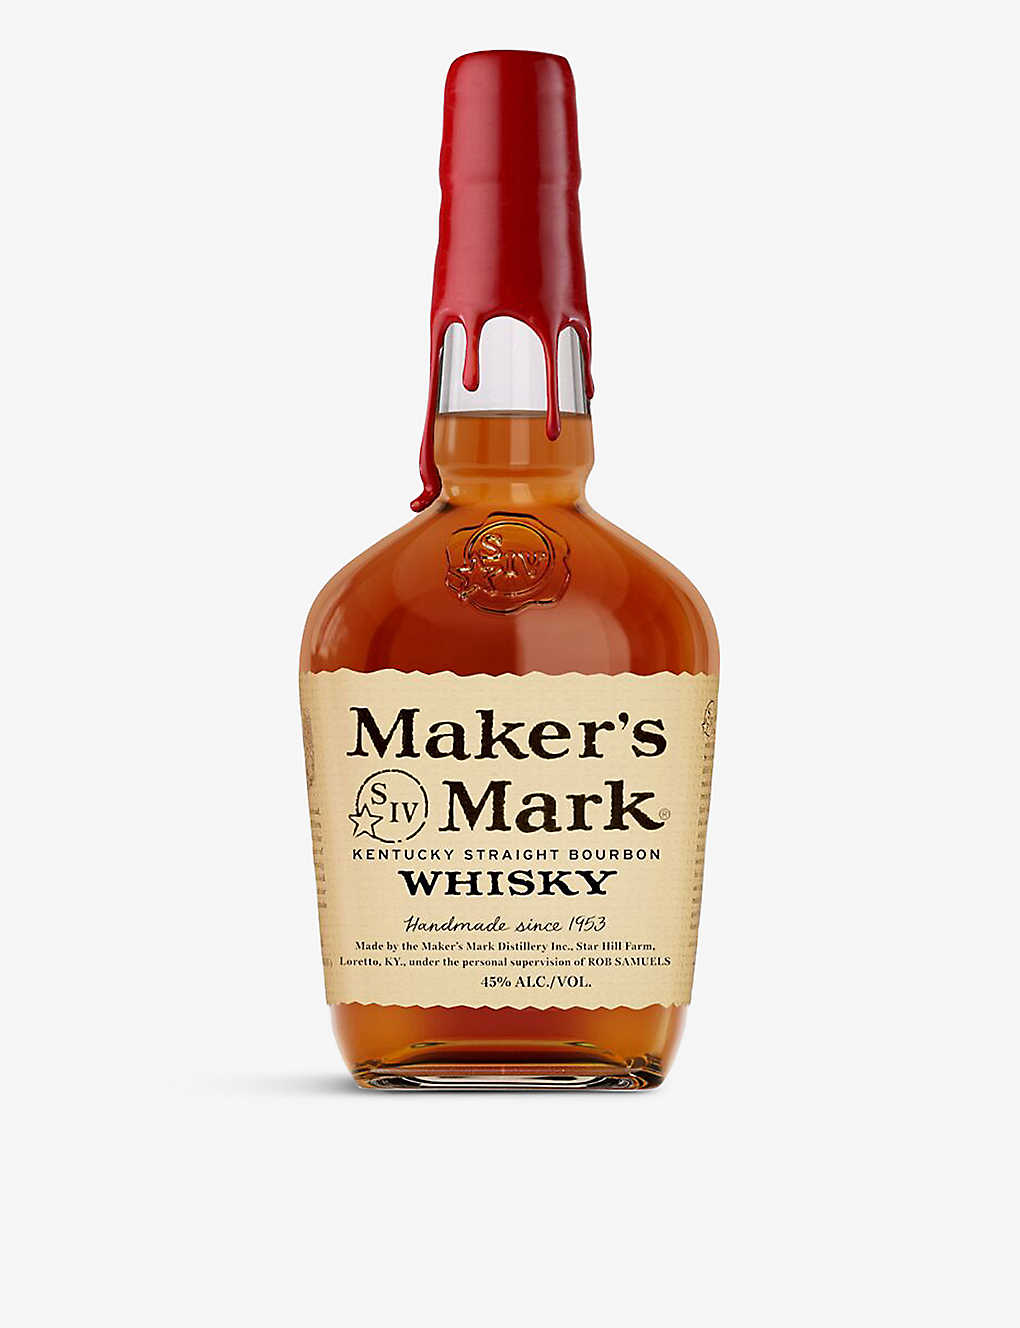 Maker's Mark Kentucky straight bourbon whisky 700ml